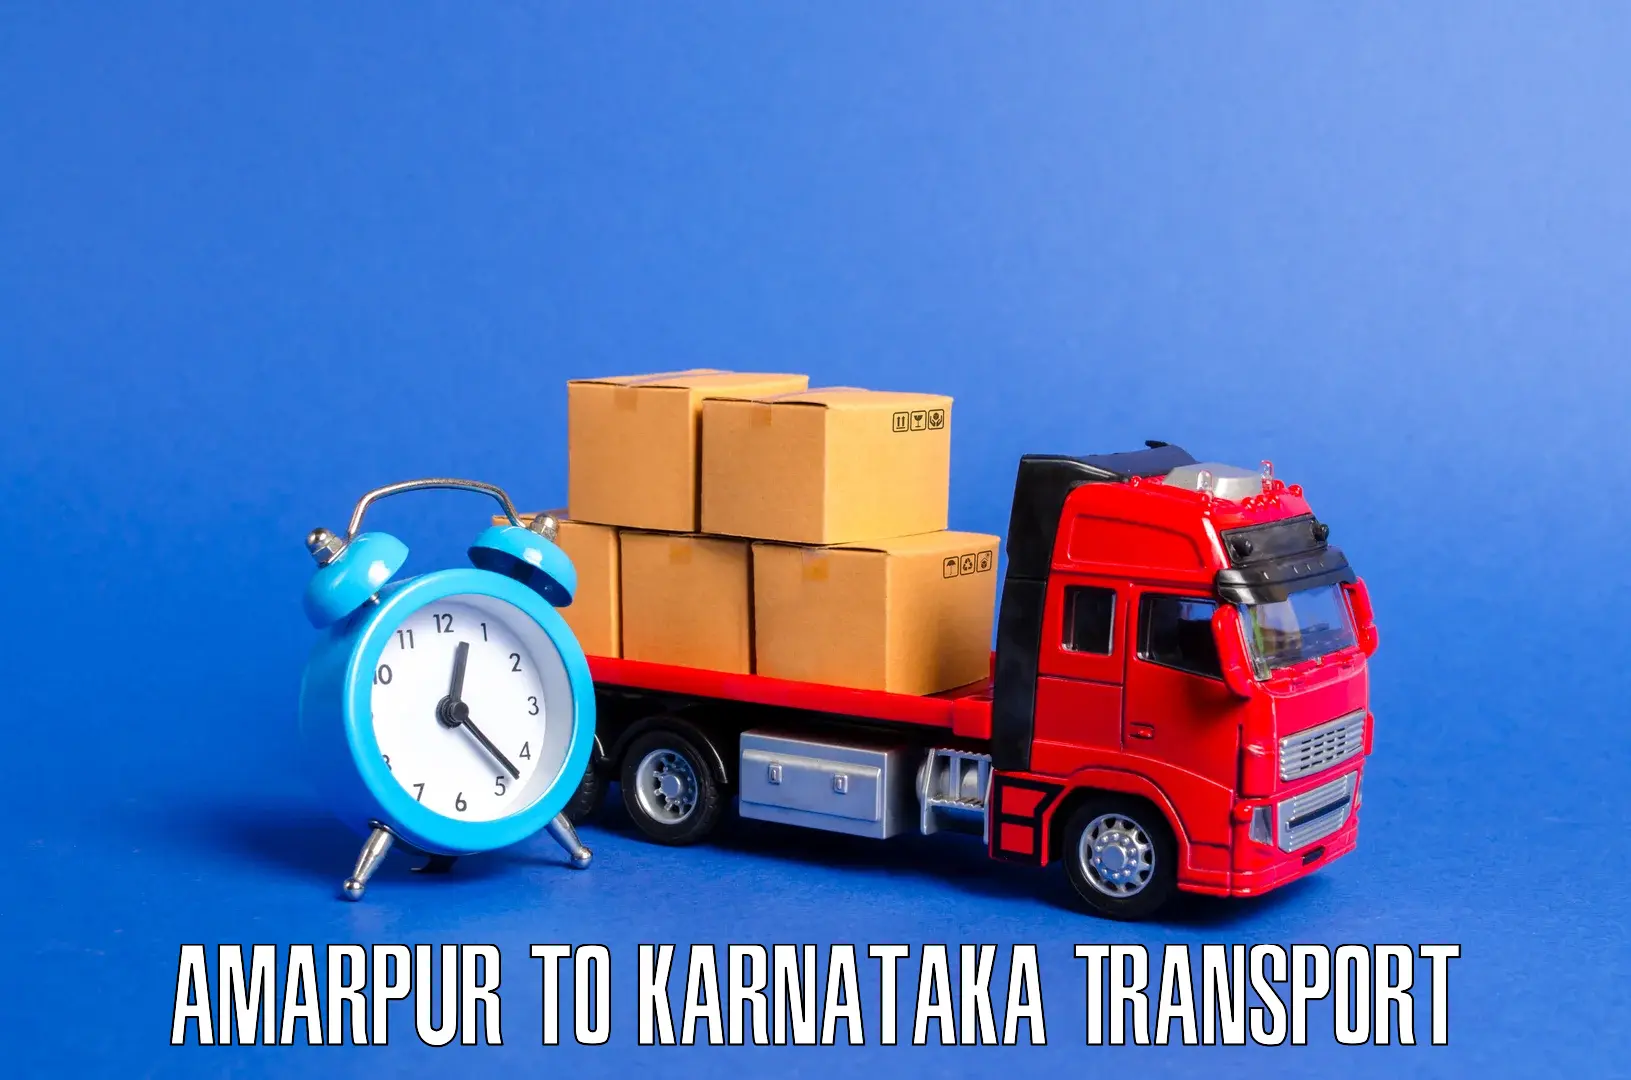 Air freight transport services Amarpur to Khanapur Karnataka